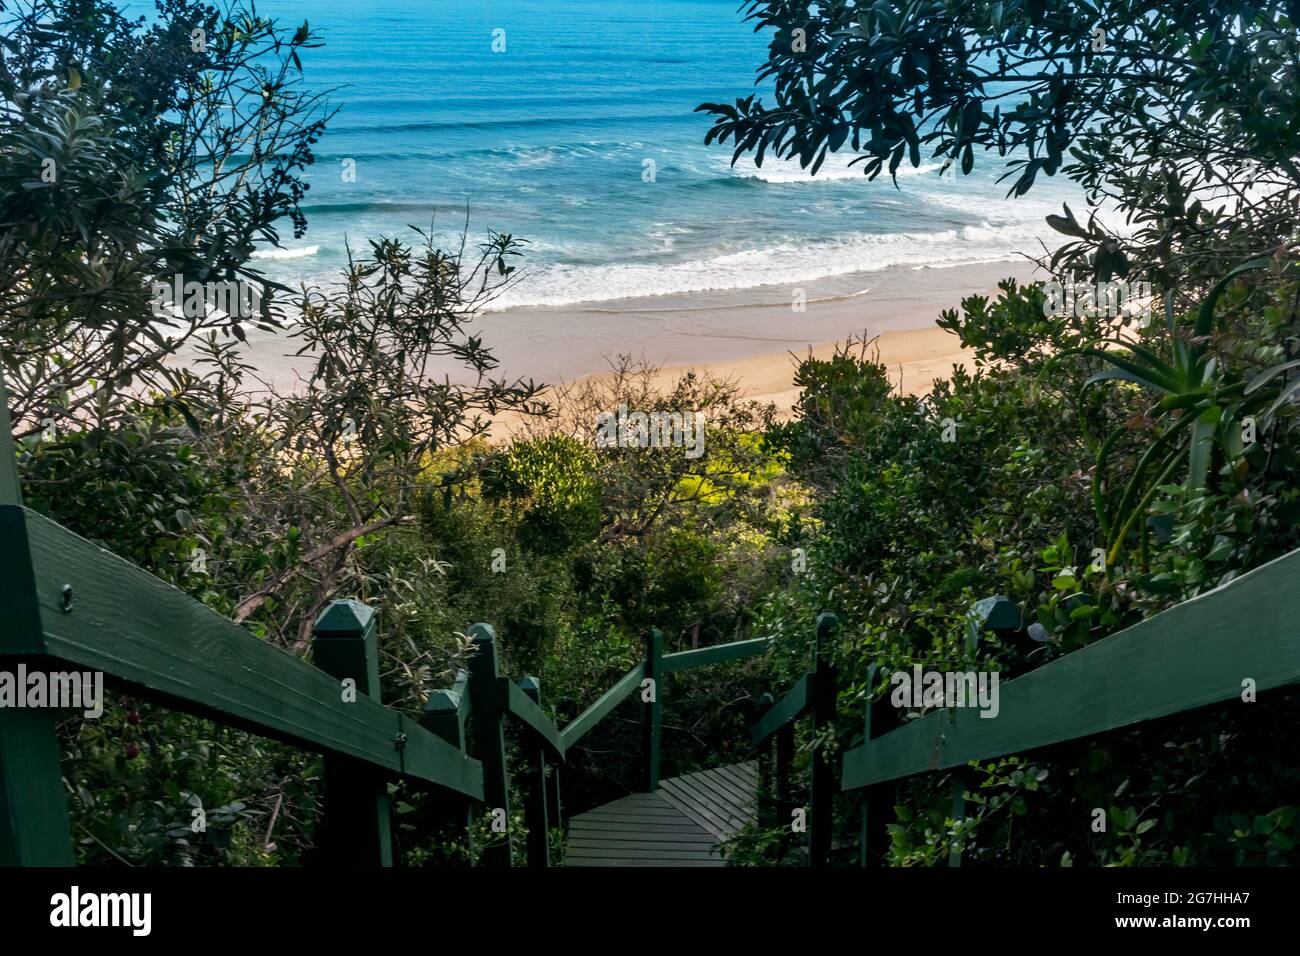 Seaside, Wilderness Resort Südafrika mit Geländer Holztreppe Gehweg - Treppen Architektur führt hinunter durch Bäume und üppige Vegetation zu bea Stockfoto